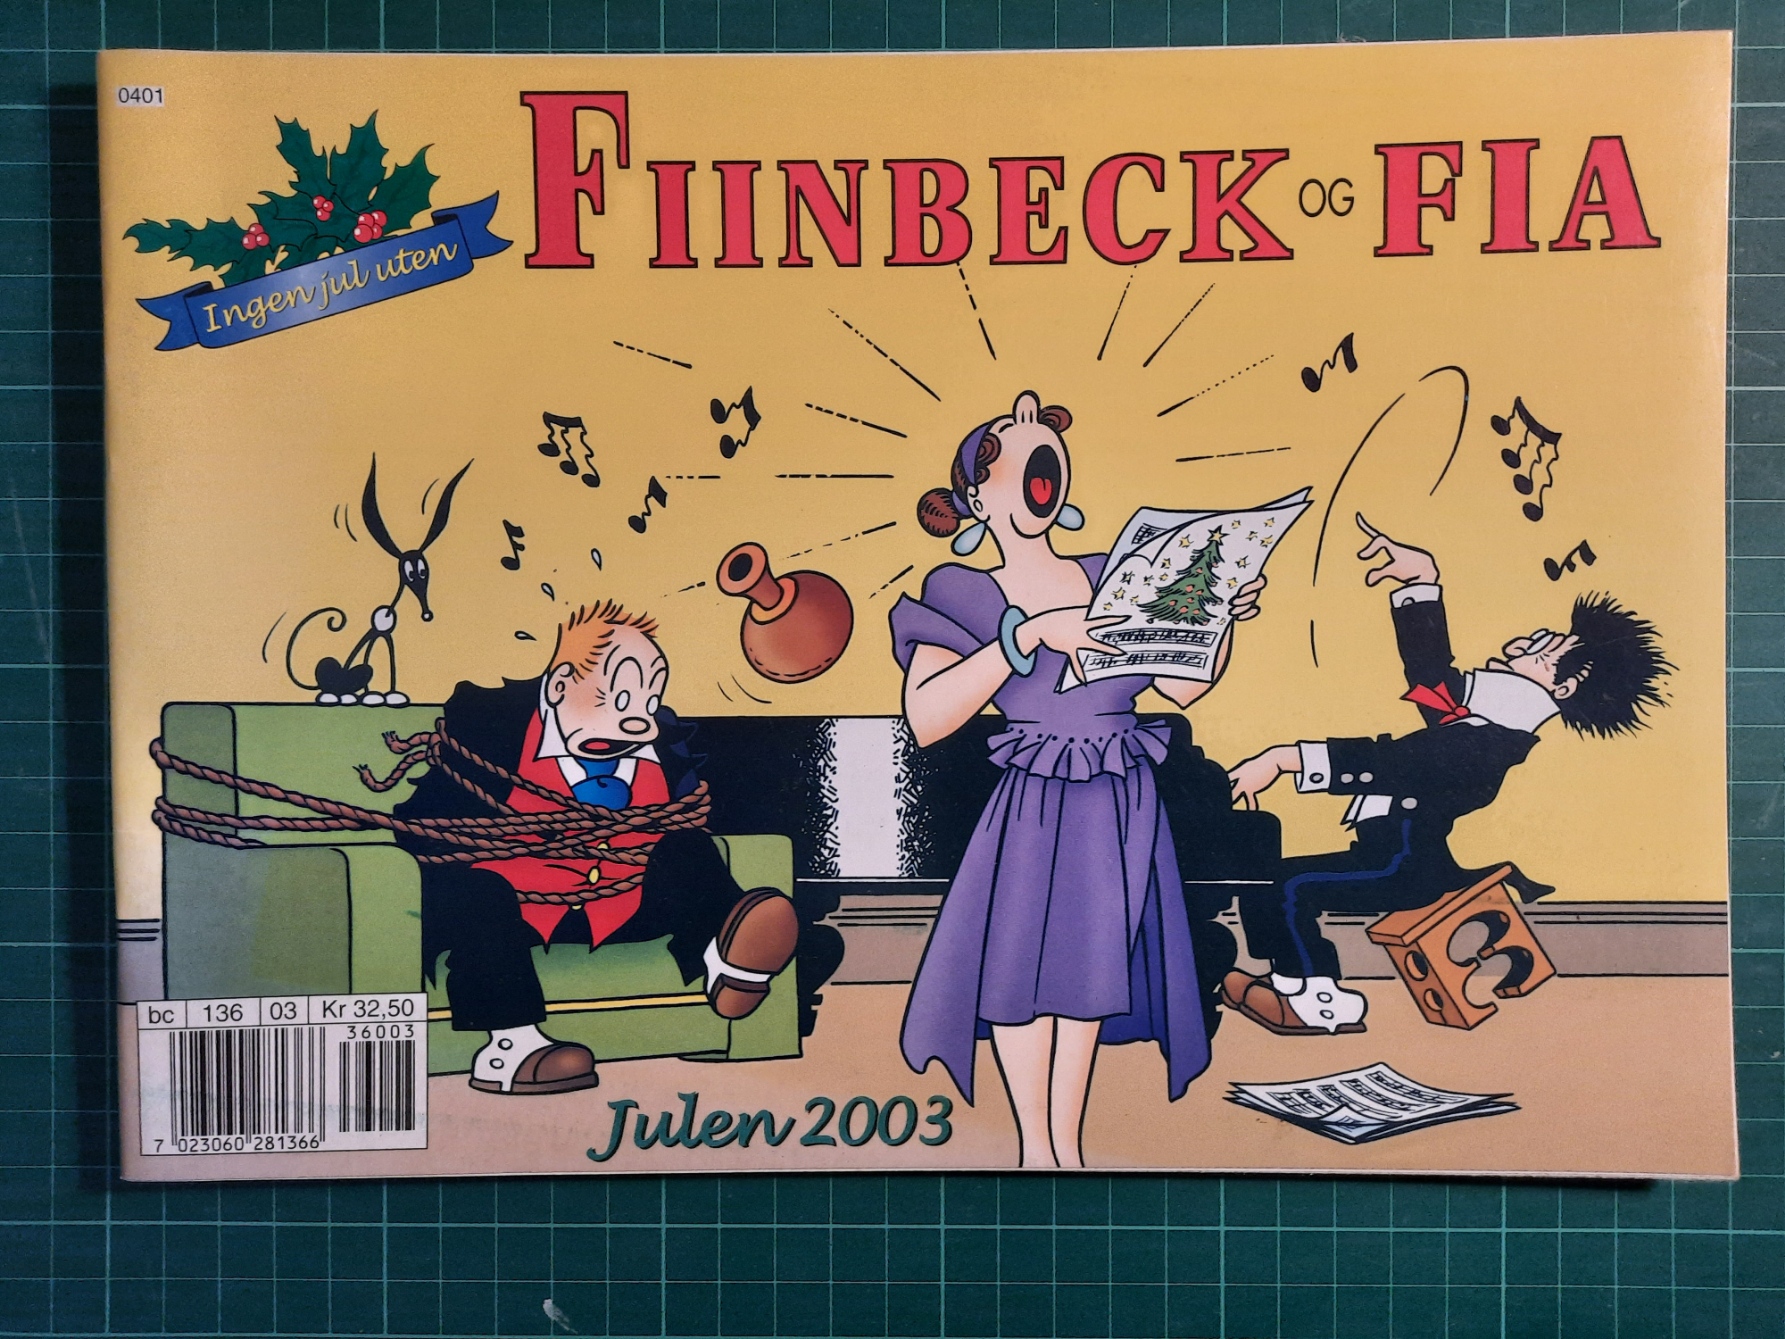 Fiinbeck og Fia 2003